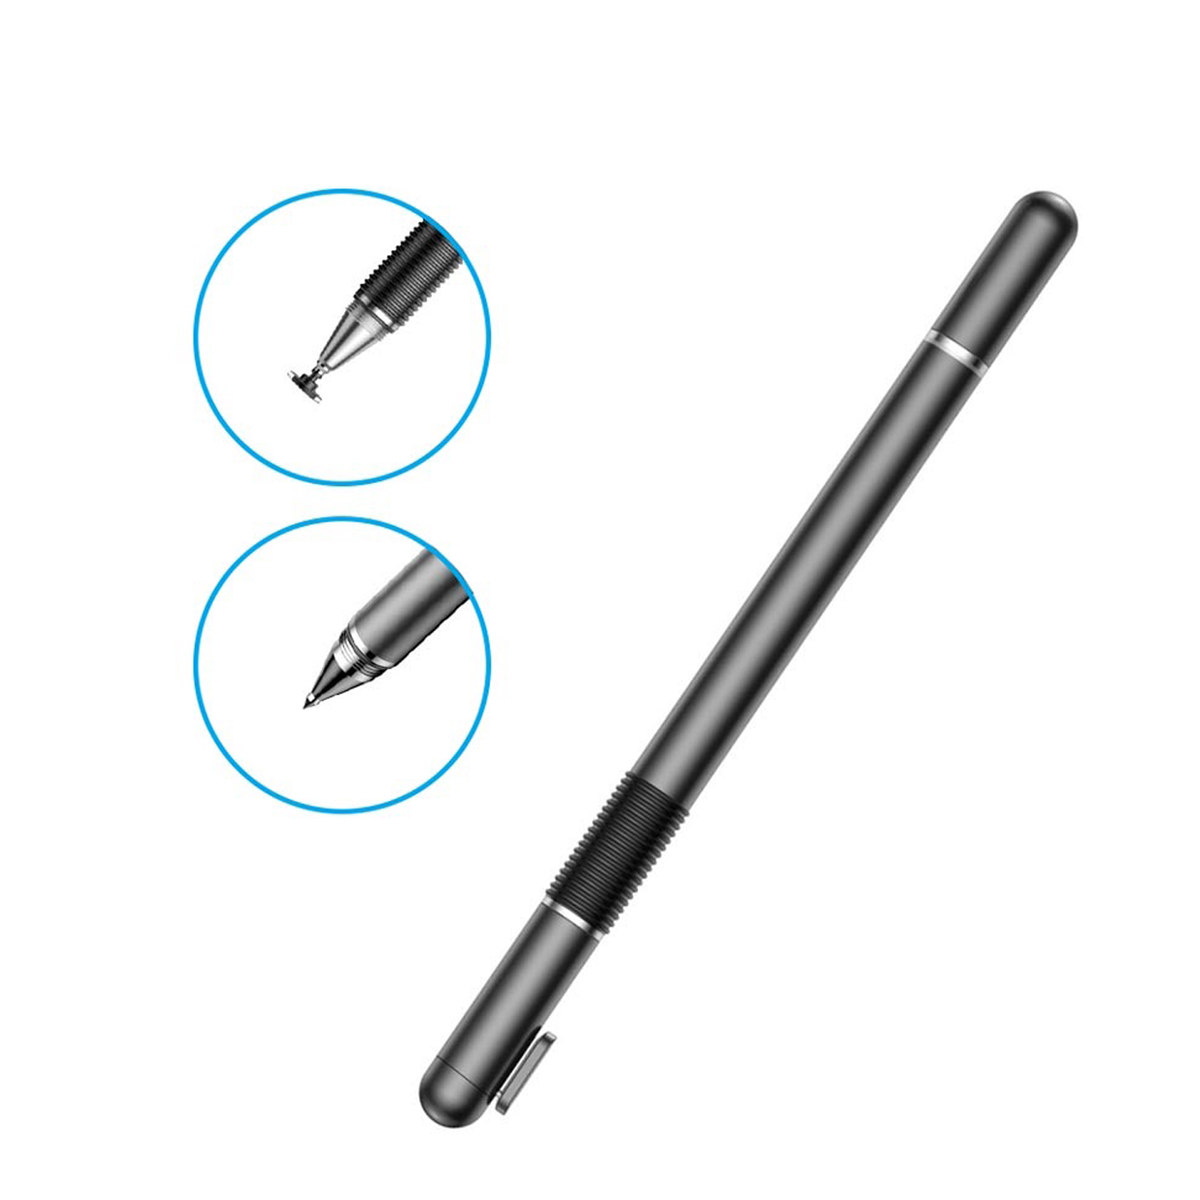 Baseus 2-in-1 Stylus Pen